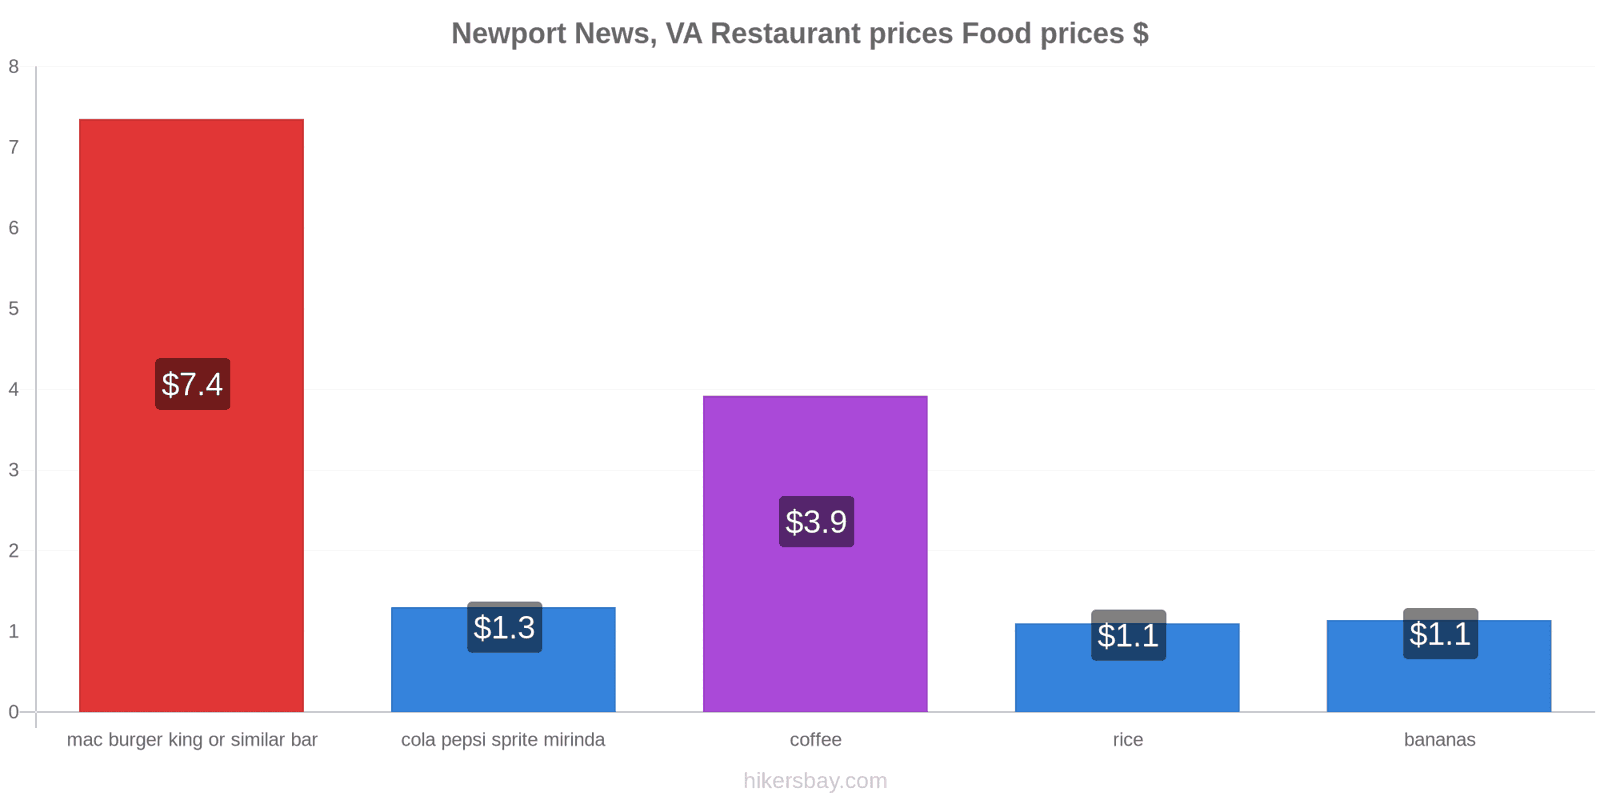 Newport News, VA price changes hikersbay.com